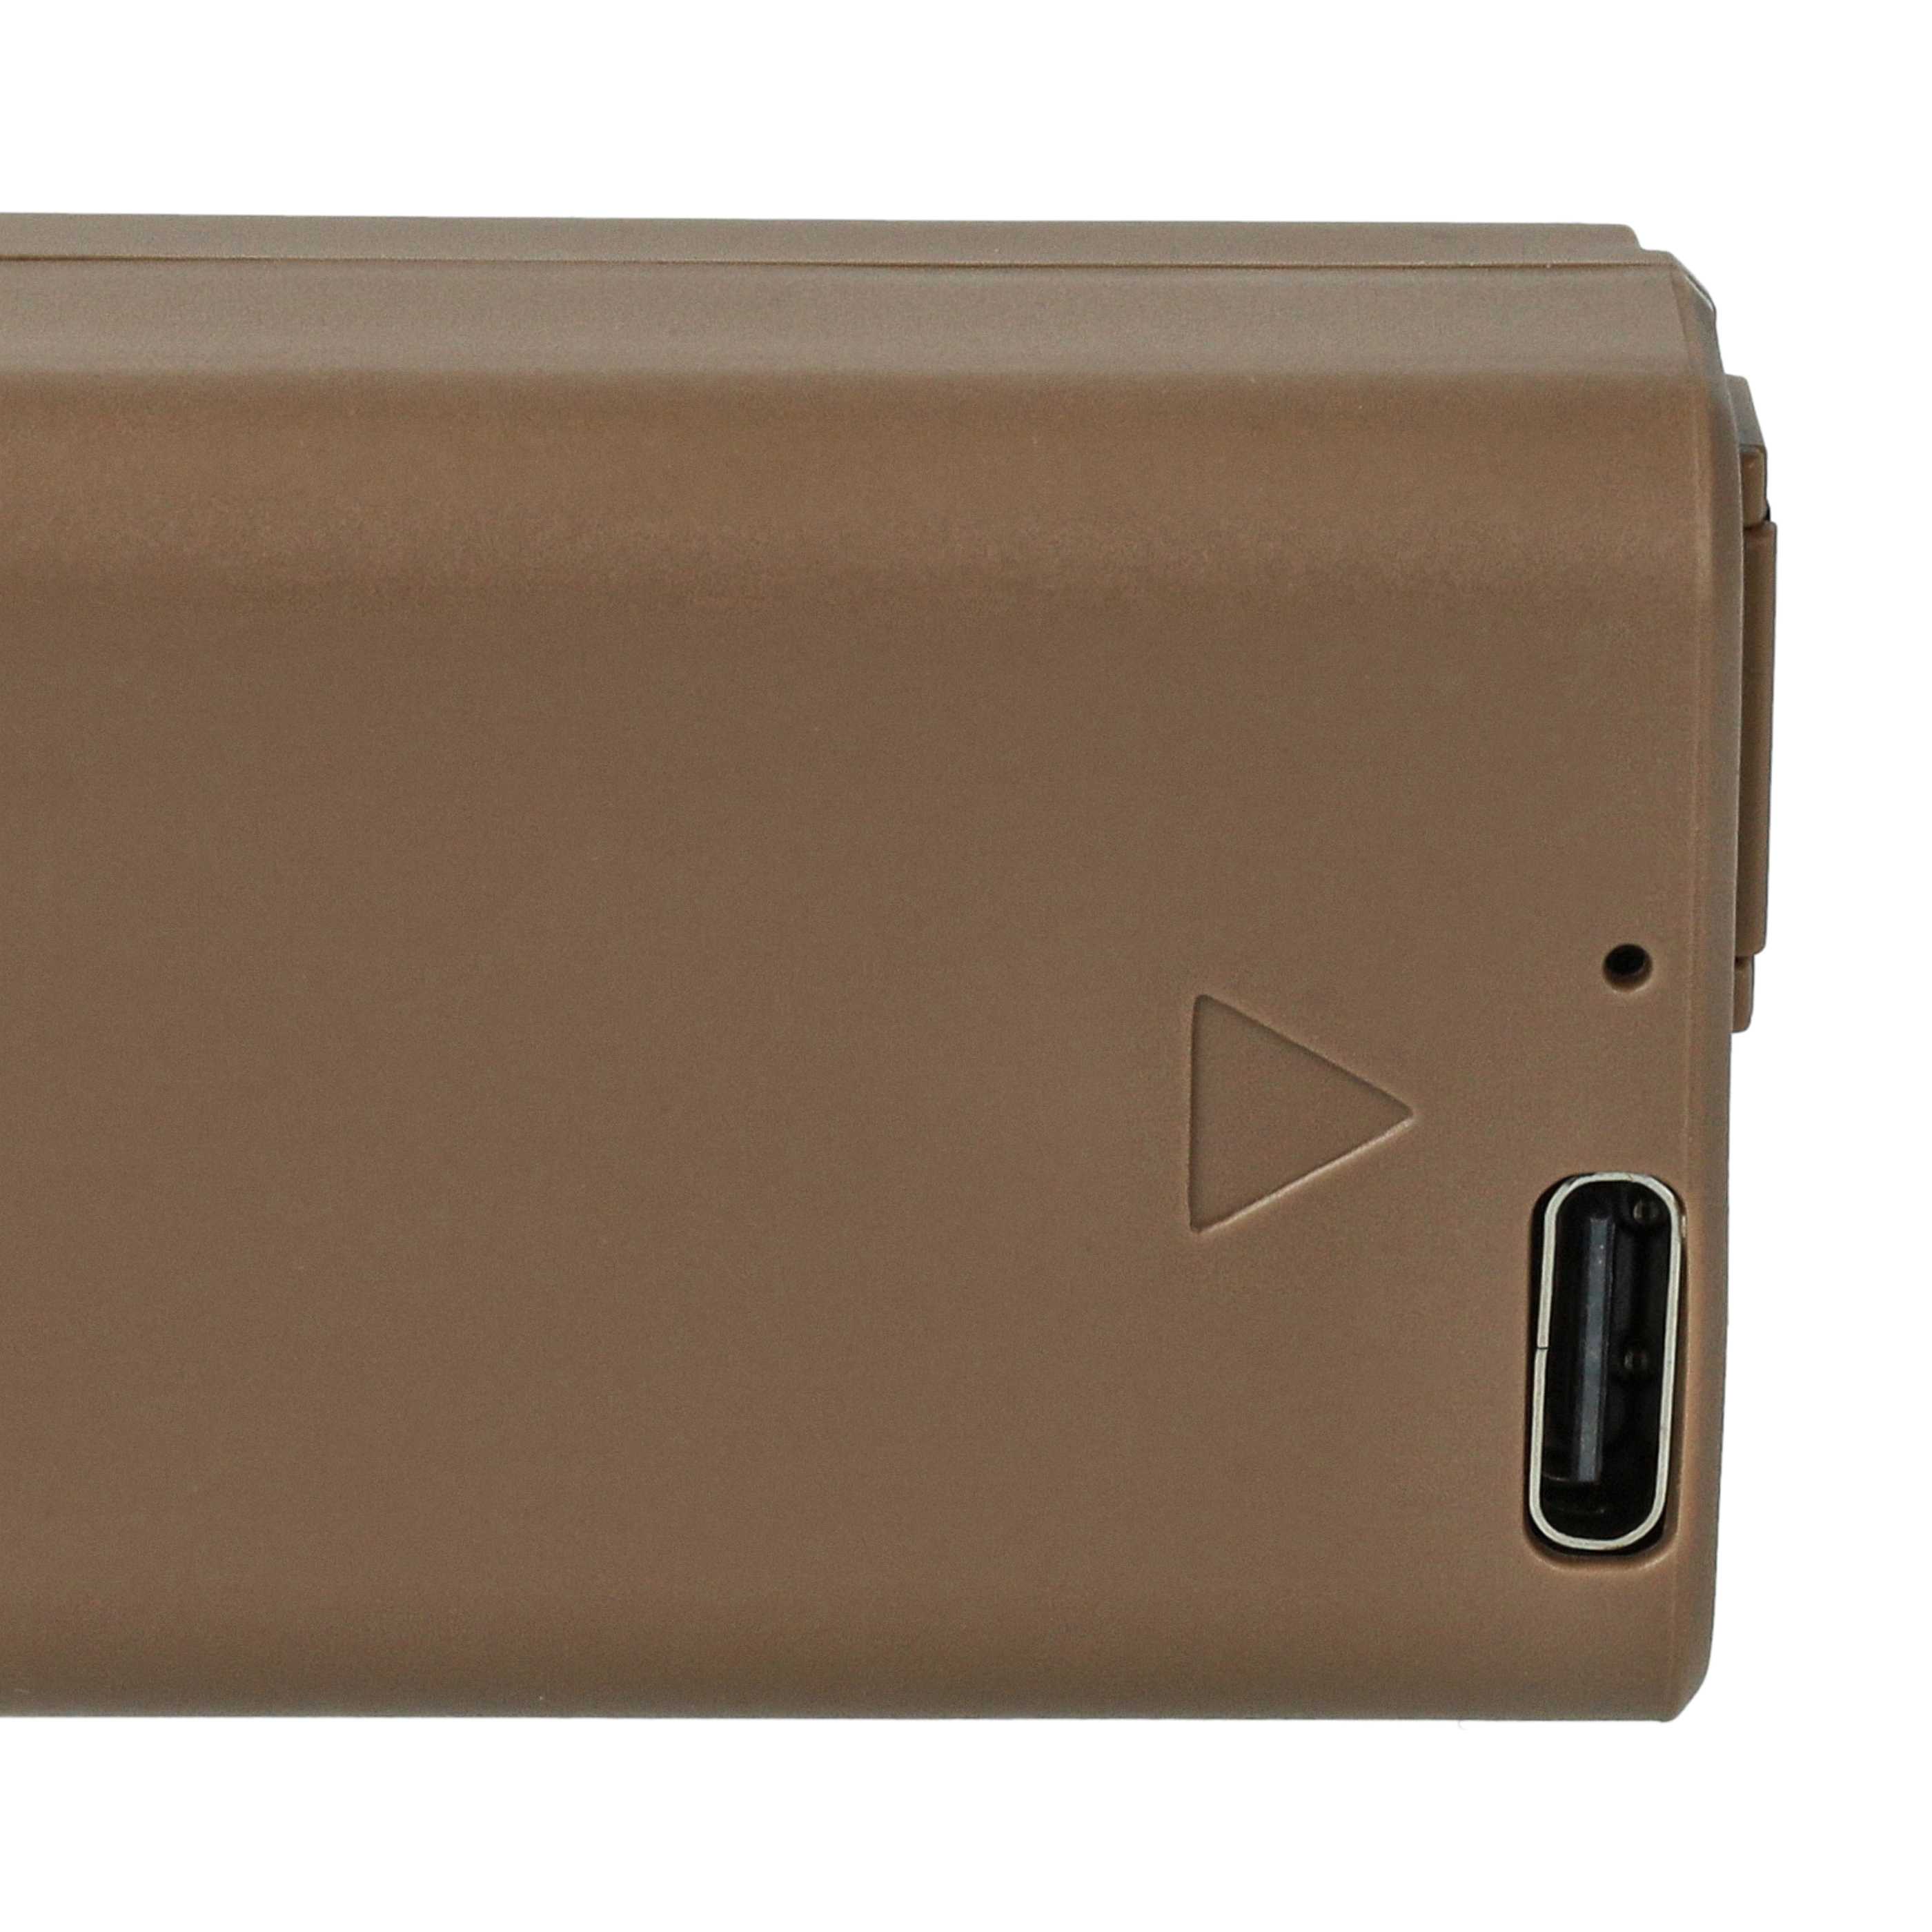 Kamera-Akku als Ersatz für Sony NP-FW50 - 1030mAh 7,4V Li-Ion mit Infochip, mit USB-C Buchse